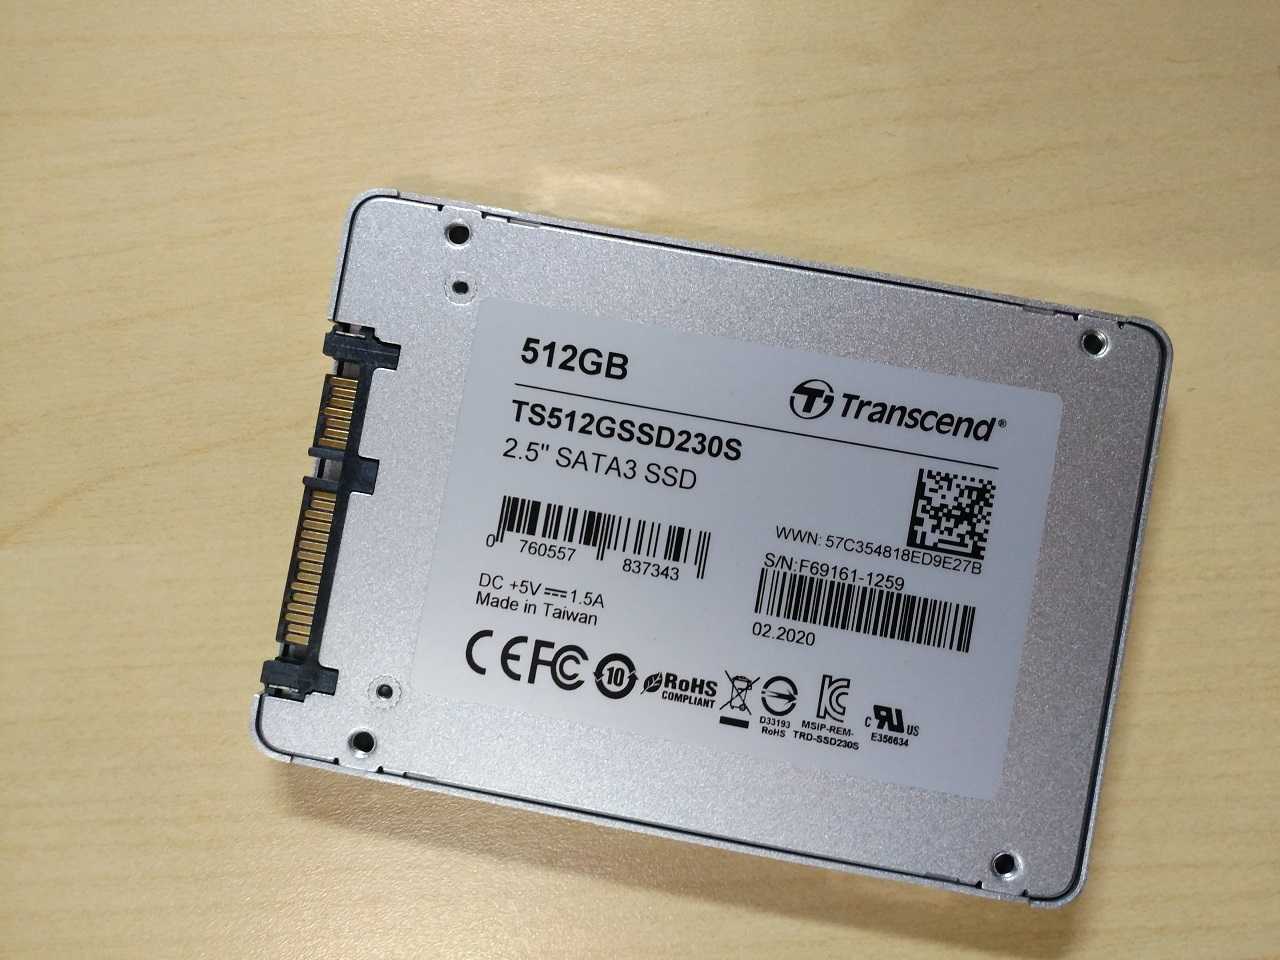 Recensione Transcend SSD230S: SSD economico orientato alle prestazioni